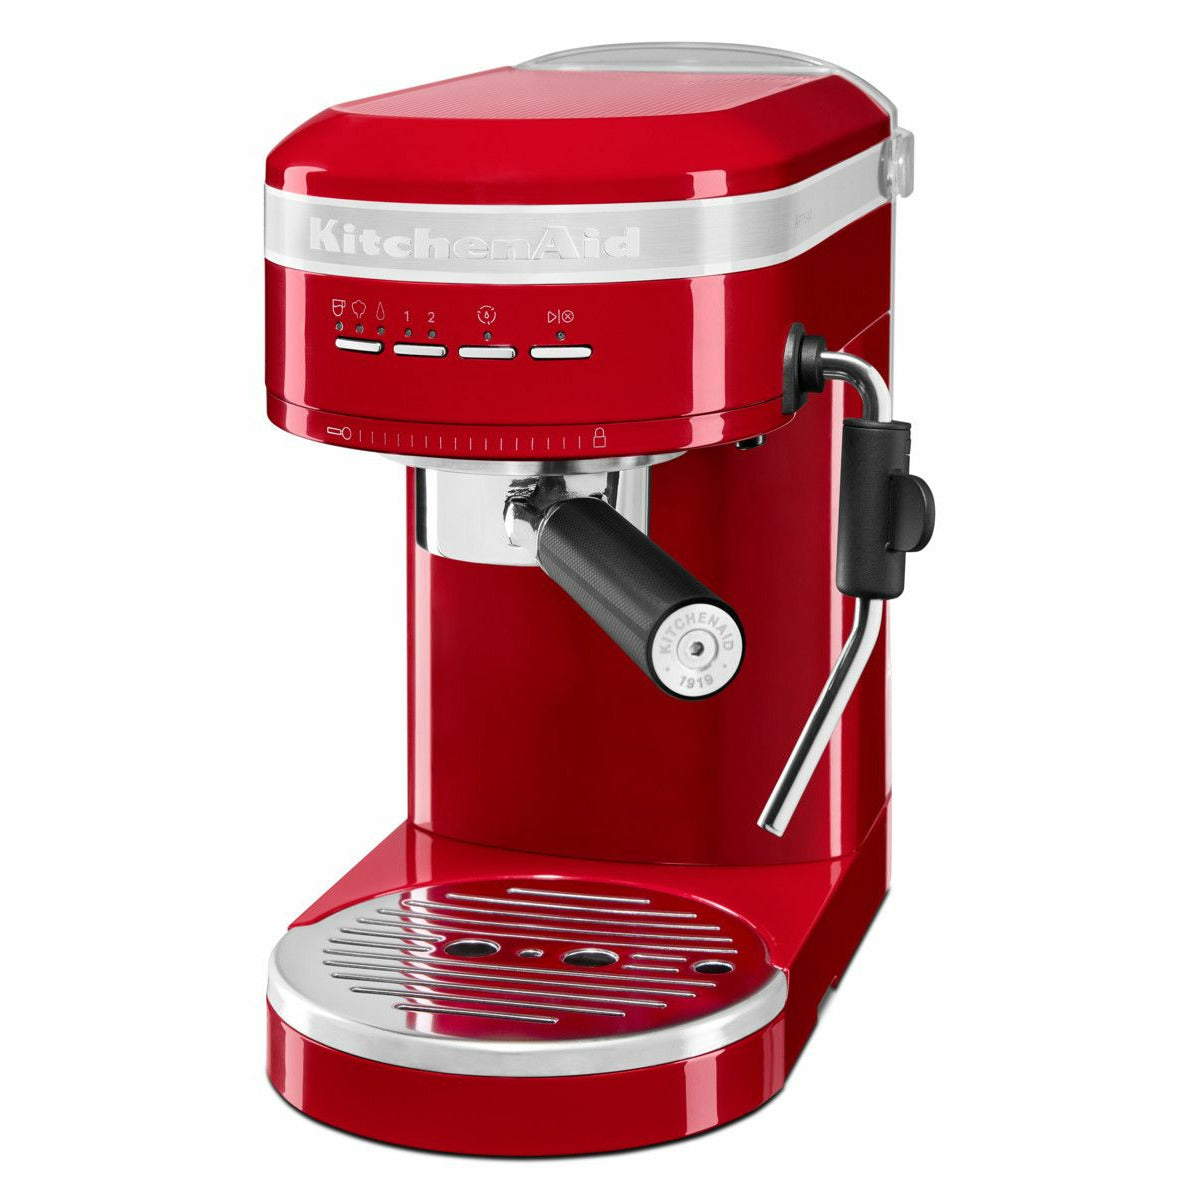 KitchenAid 5KES6503 Artisan Espressomaskine, Rød